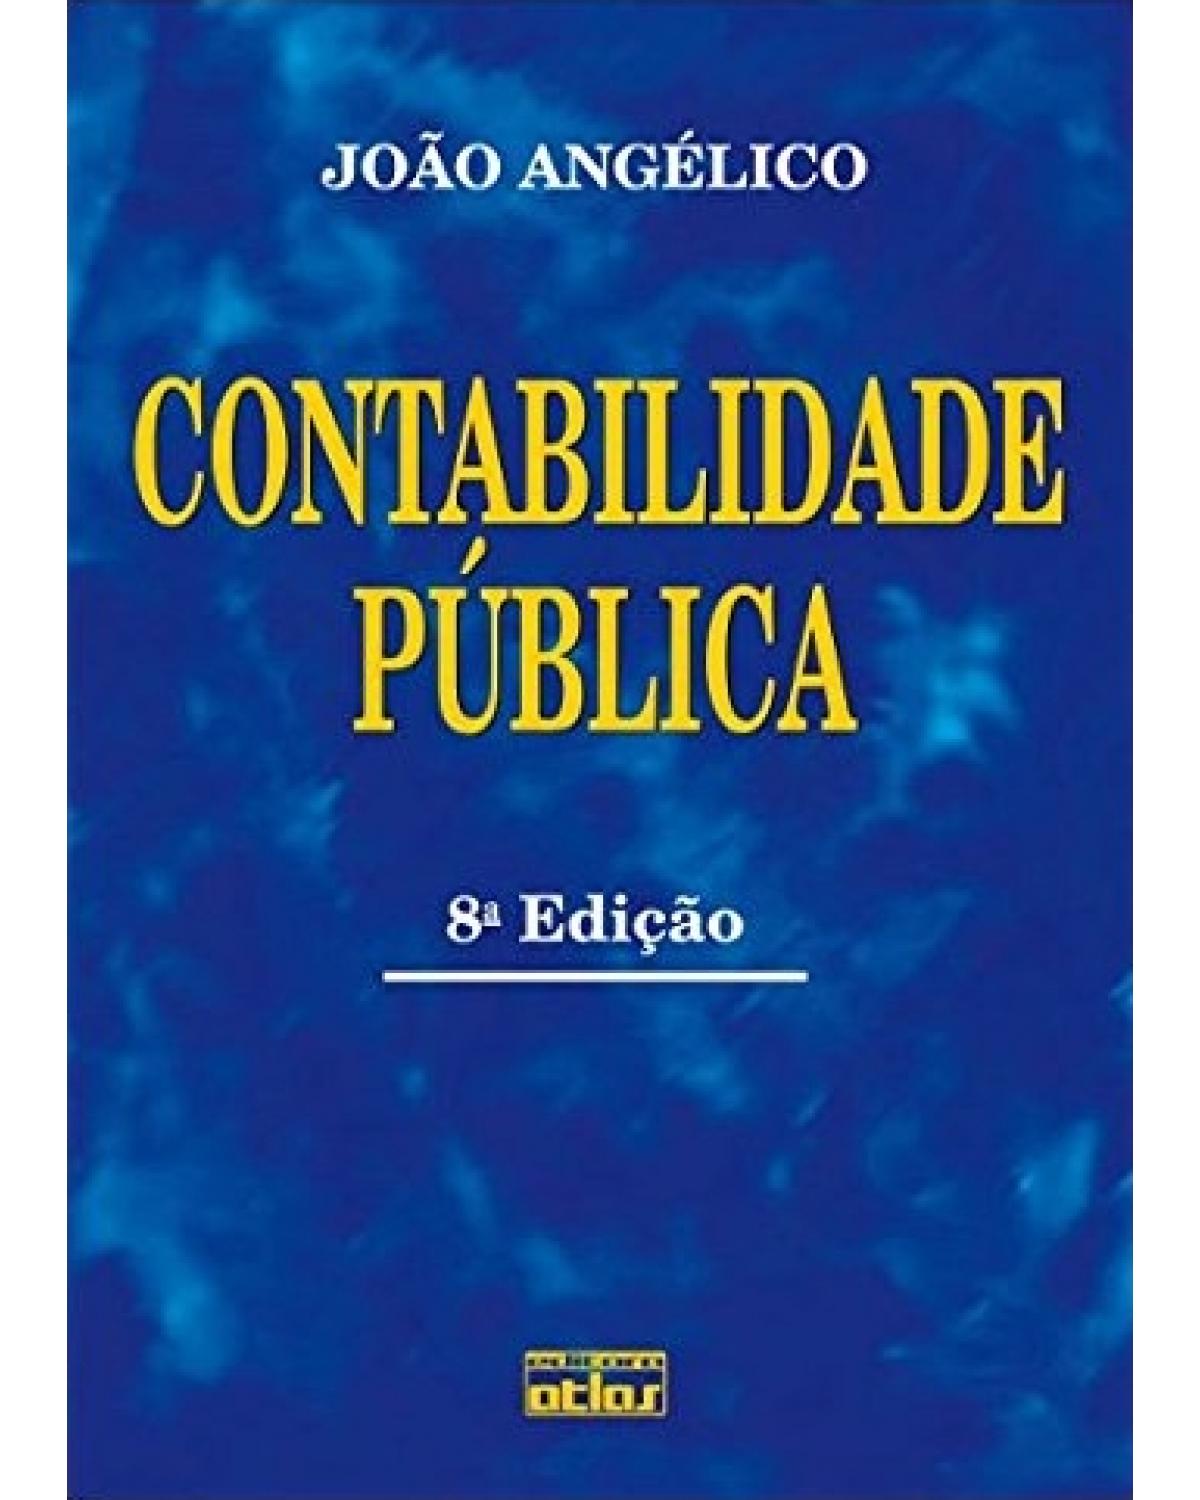 Contabilidade pública - 8ª Edição | 1994